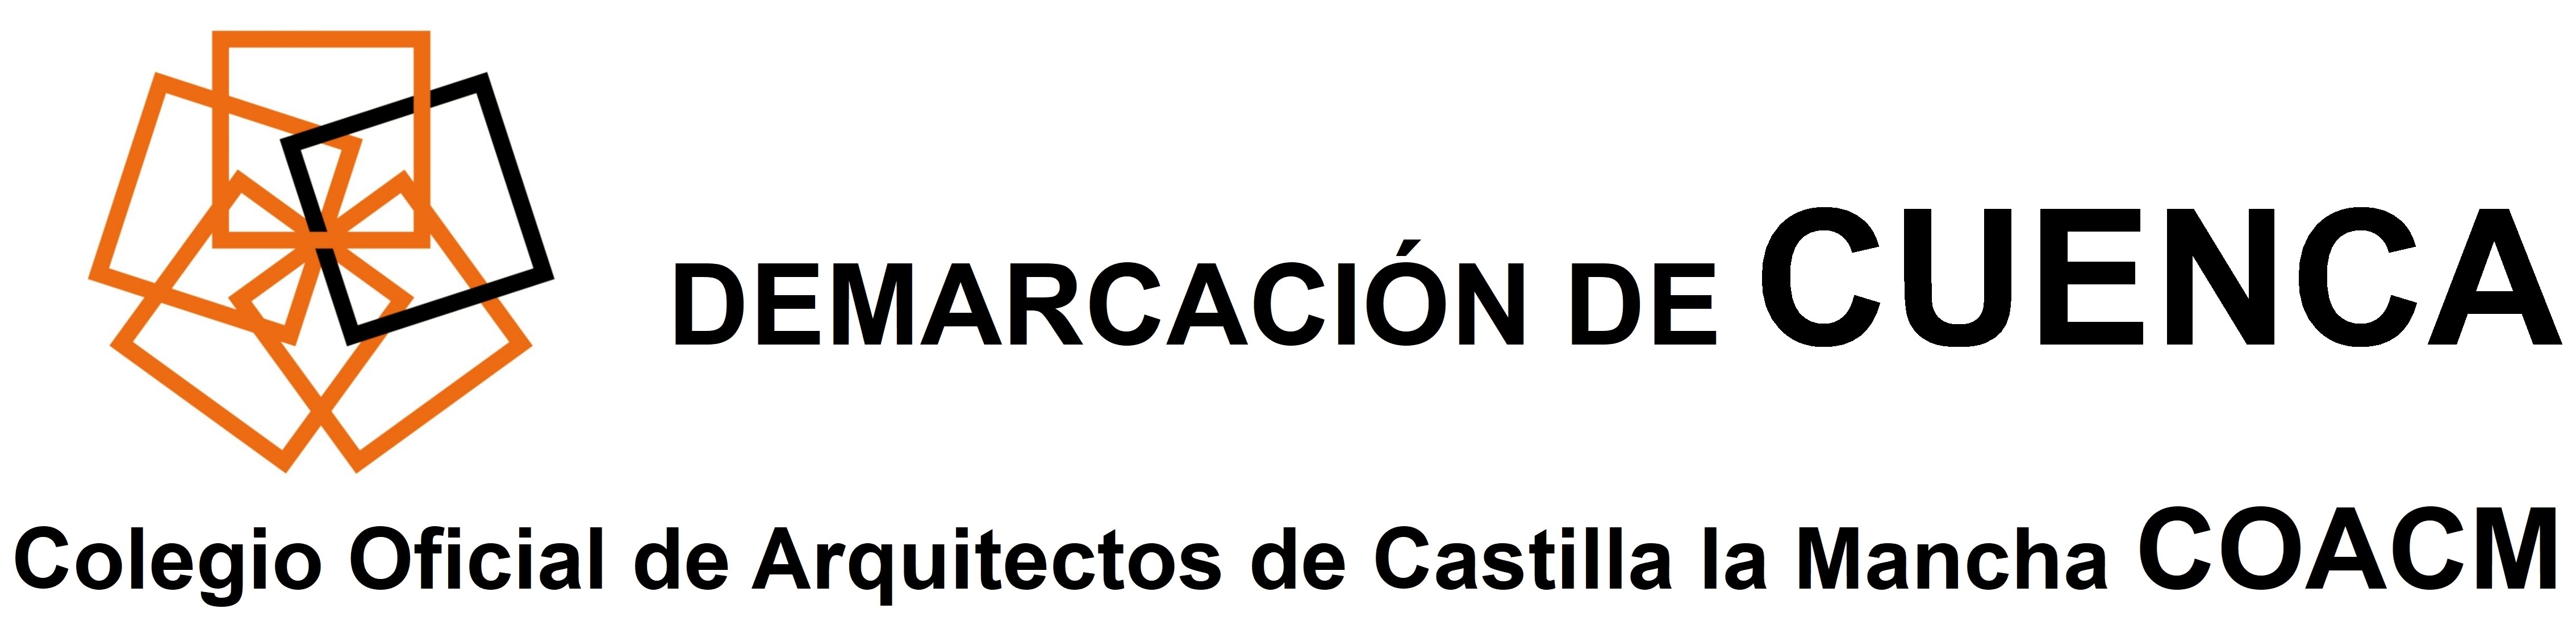 Demarcación de Cuenca Colegio Oficial de Arquitectos de Castilla-La Mancha.